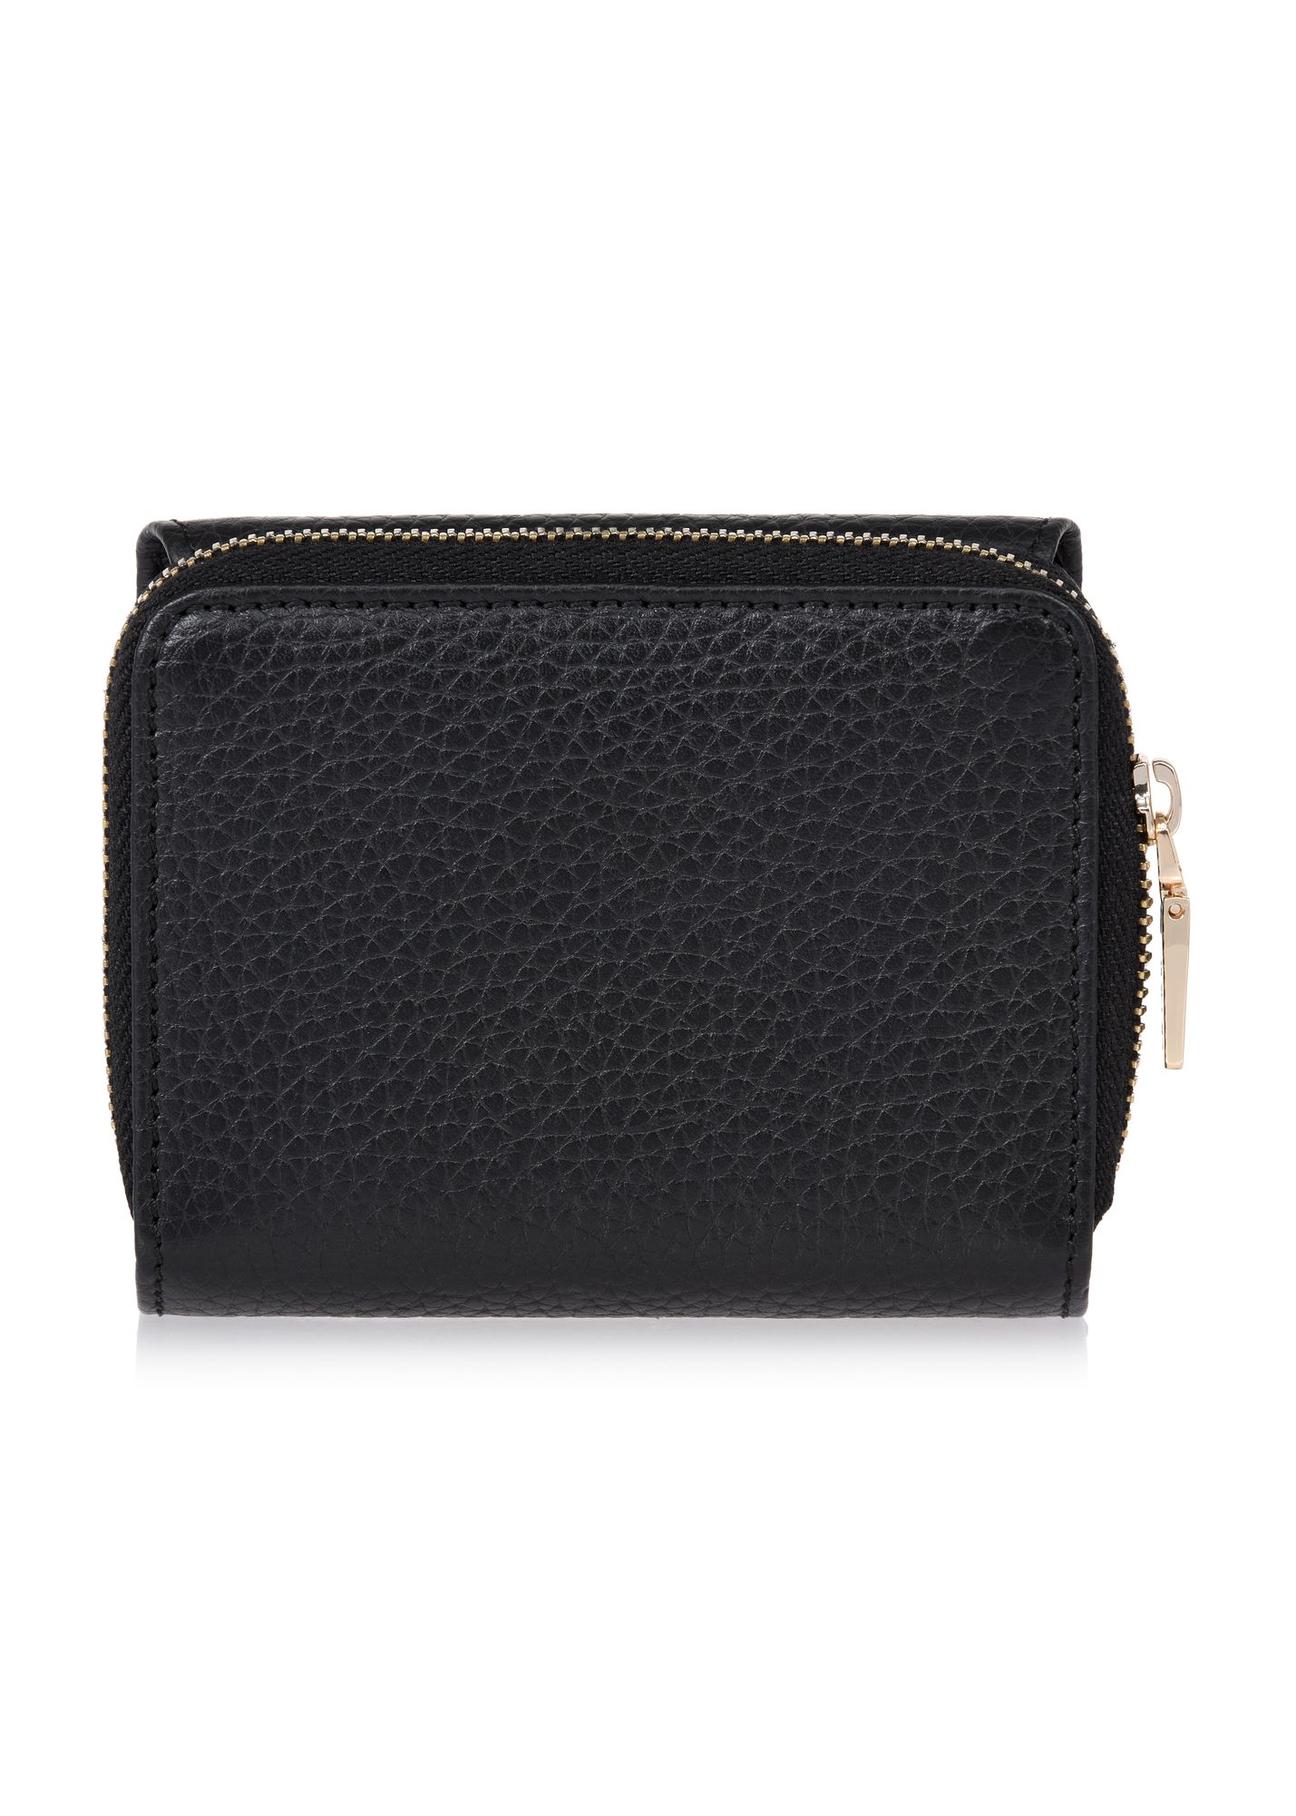 Czarny skórzany portfel damski z ochroną RFID PORES-0817RFID-99(W24)